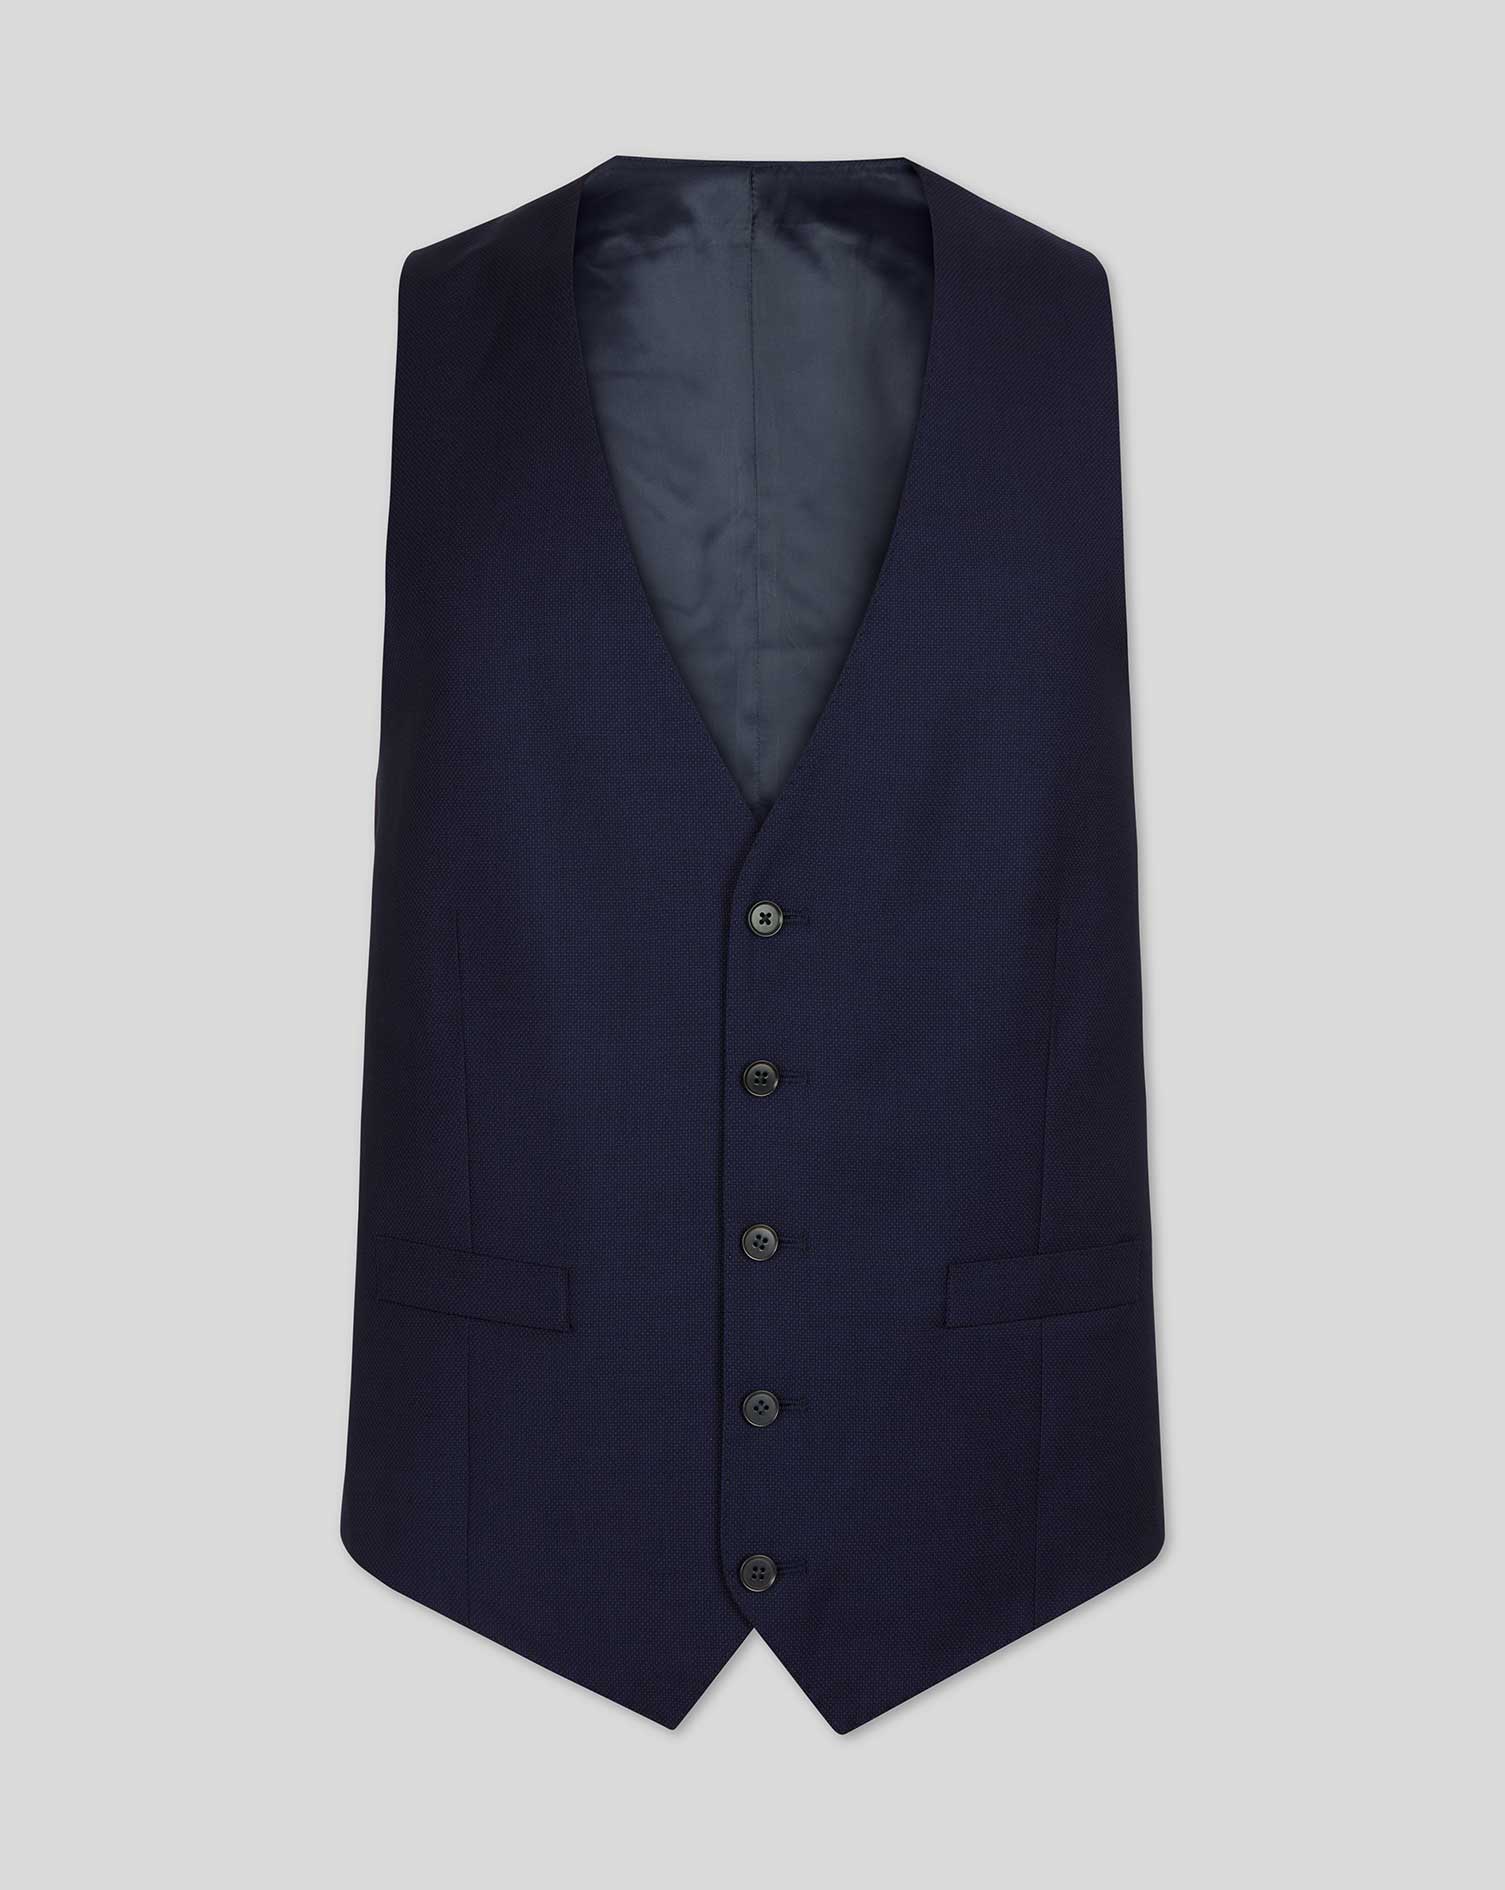 Men's Charles Tyrwhitt Birdseye Travel Suit Waistcoat - Ink Blue Size w36 Wool
